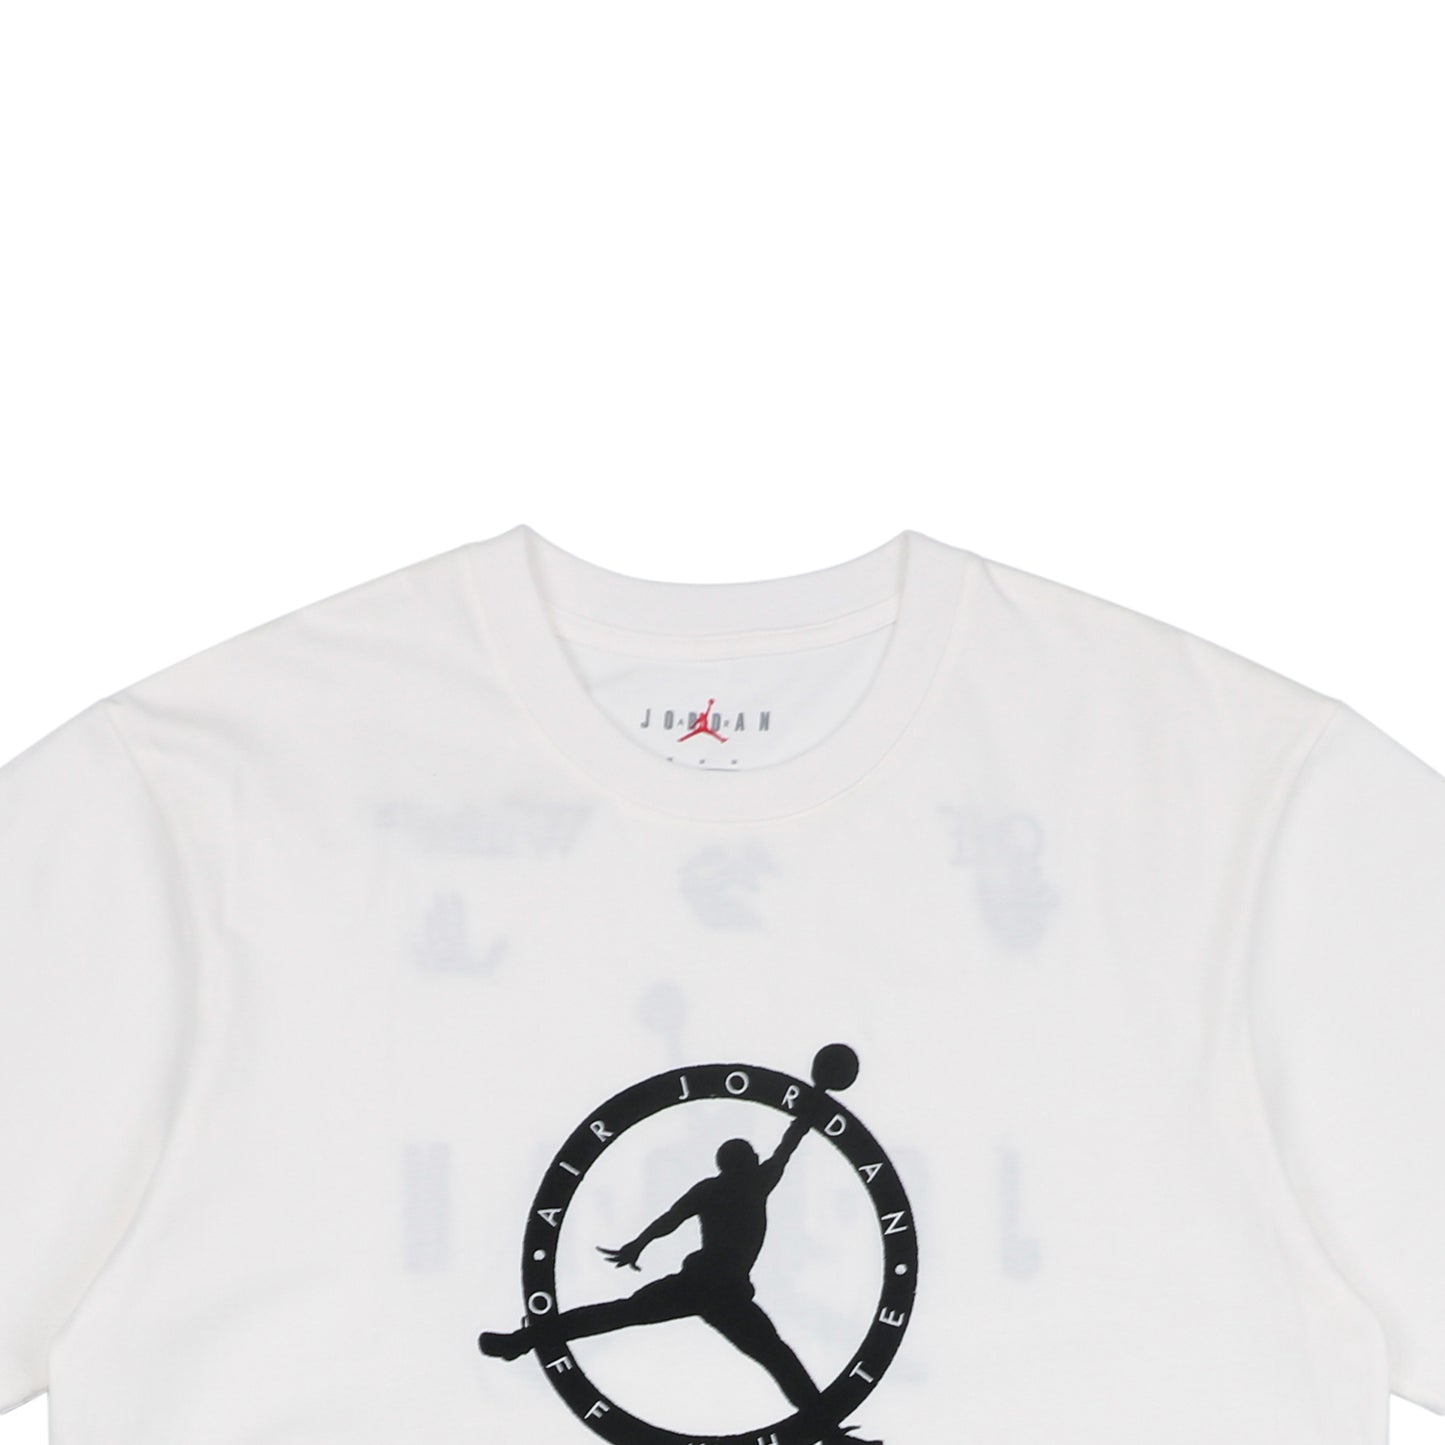 OW x AJ White T-Shirt